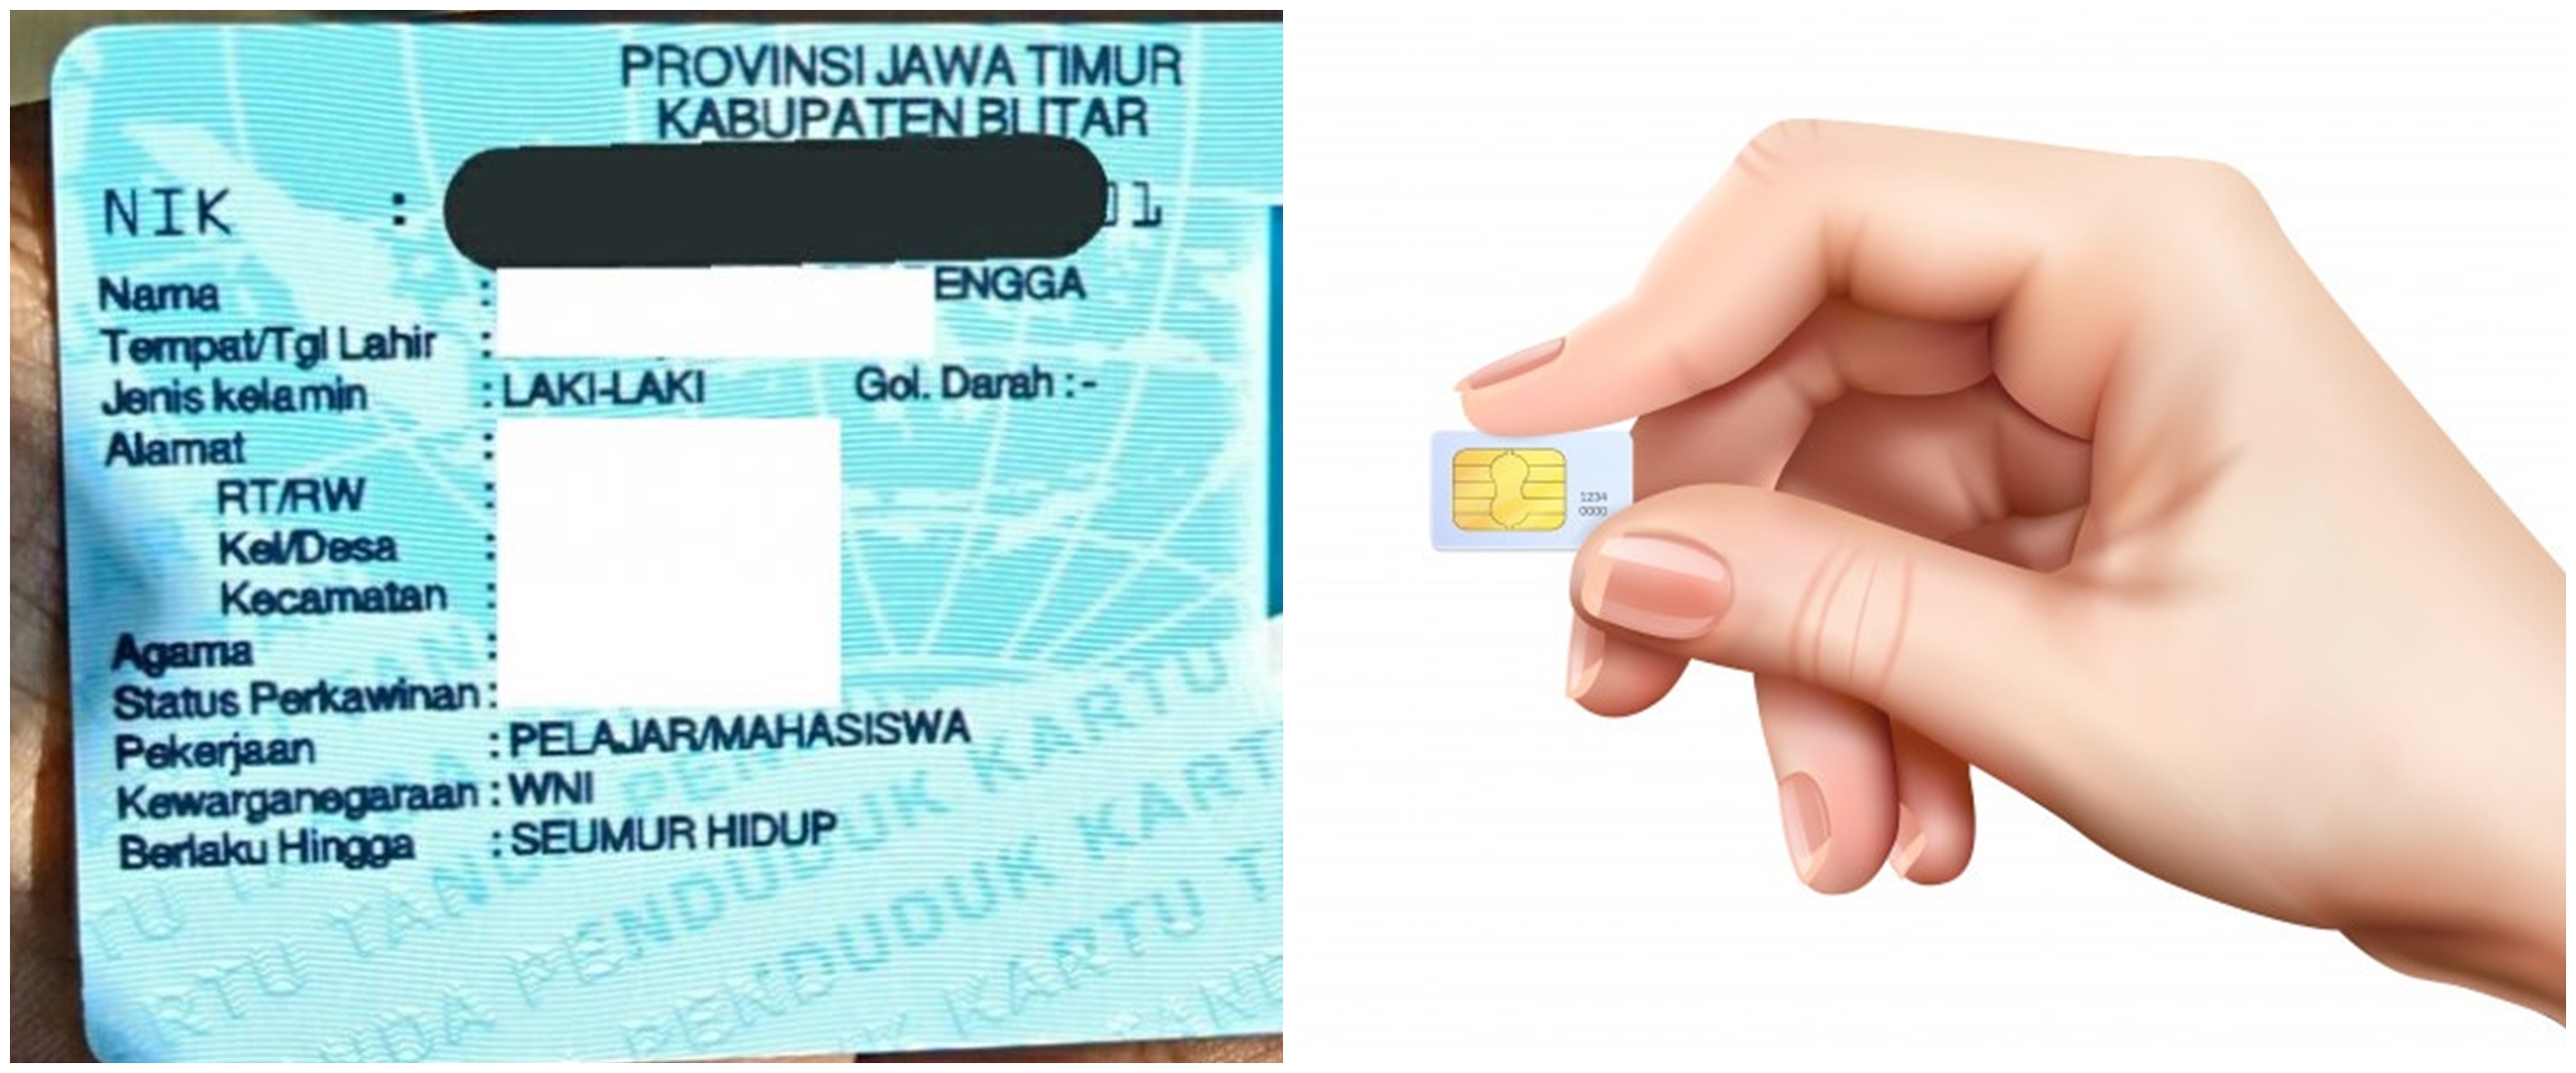 5 Cara cek NIK yang telah terdaftar di kartu SIM card, nggak ribet